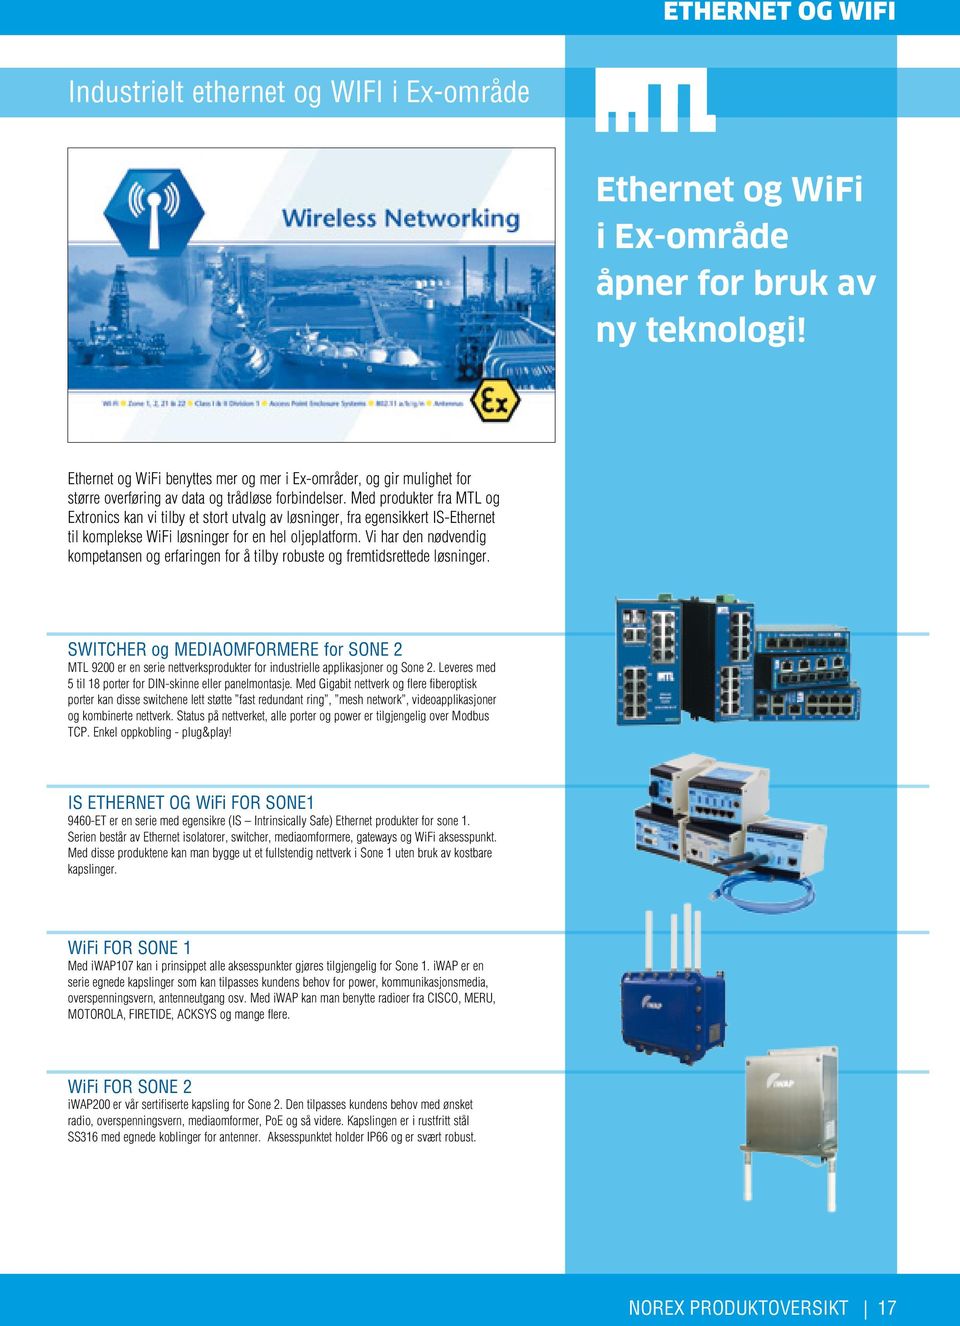 Med produkter fra MTL og Extronics kan vi tilby et stort utvalg av løsninger, fra egensikkert IS-Ethernet til komplekse WiFi løsninger for en hel oljeplatform.